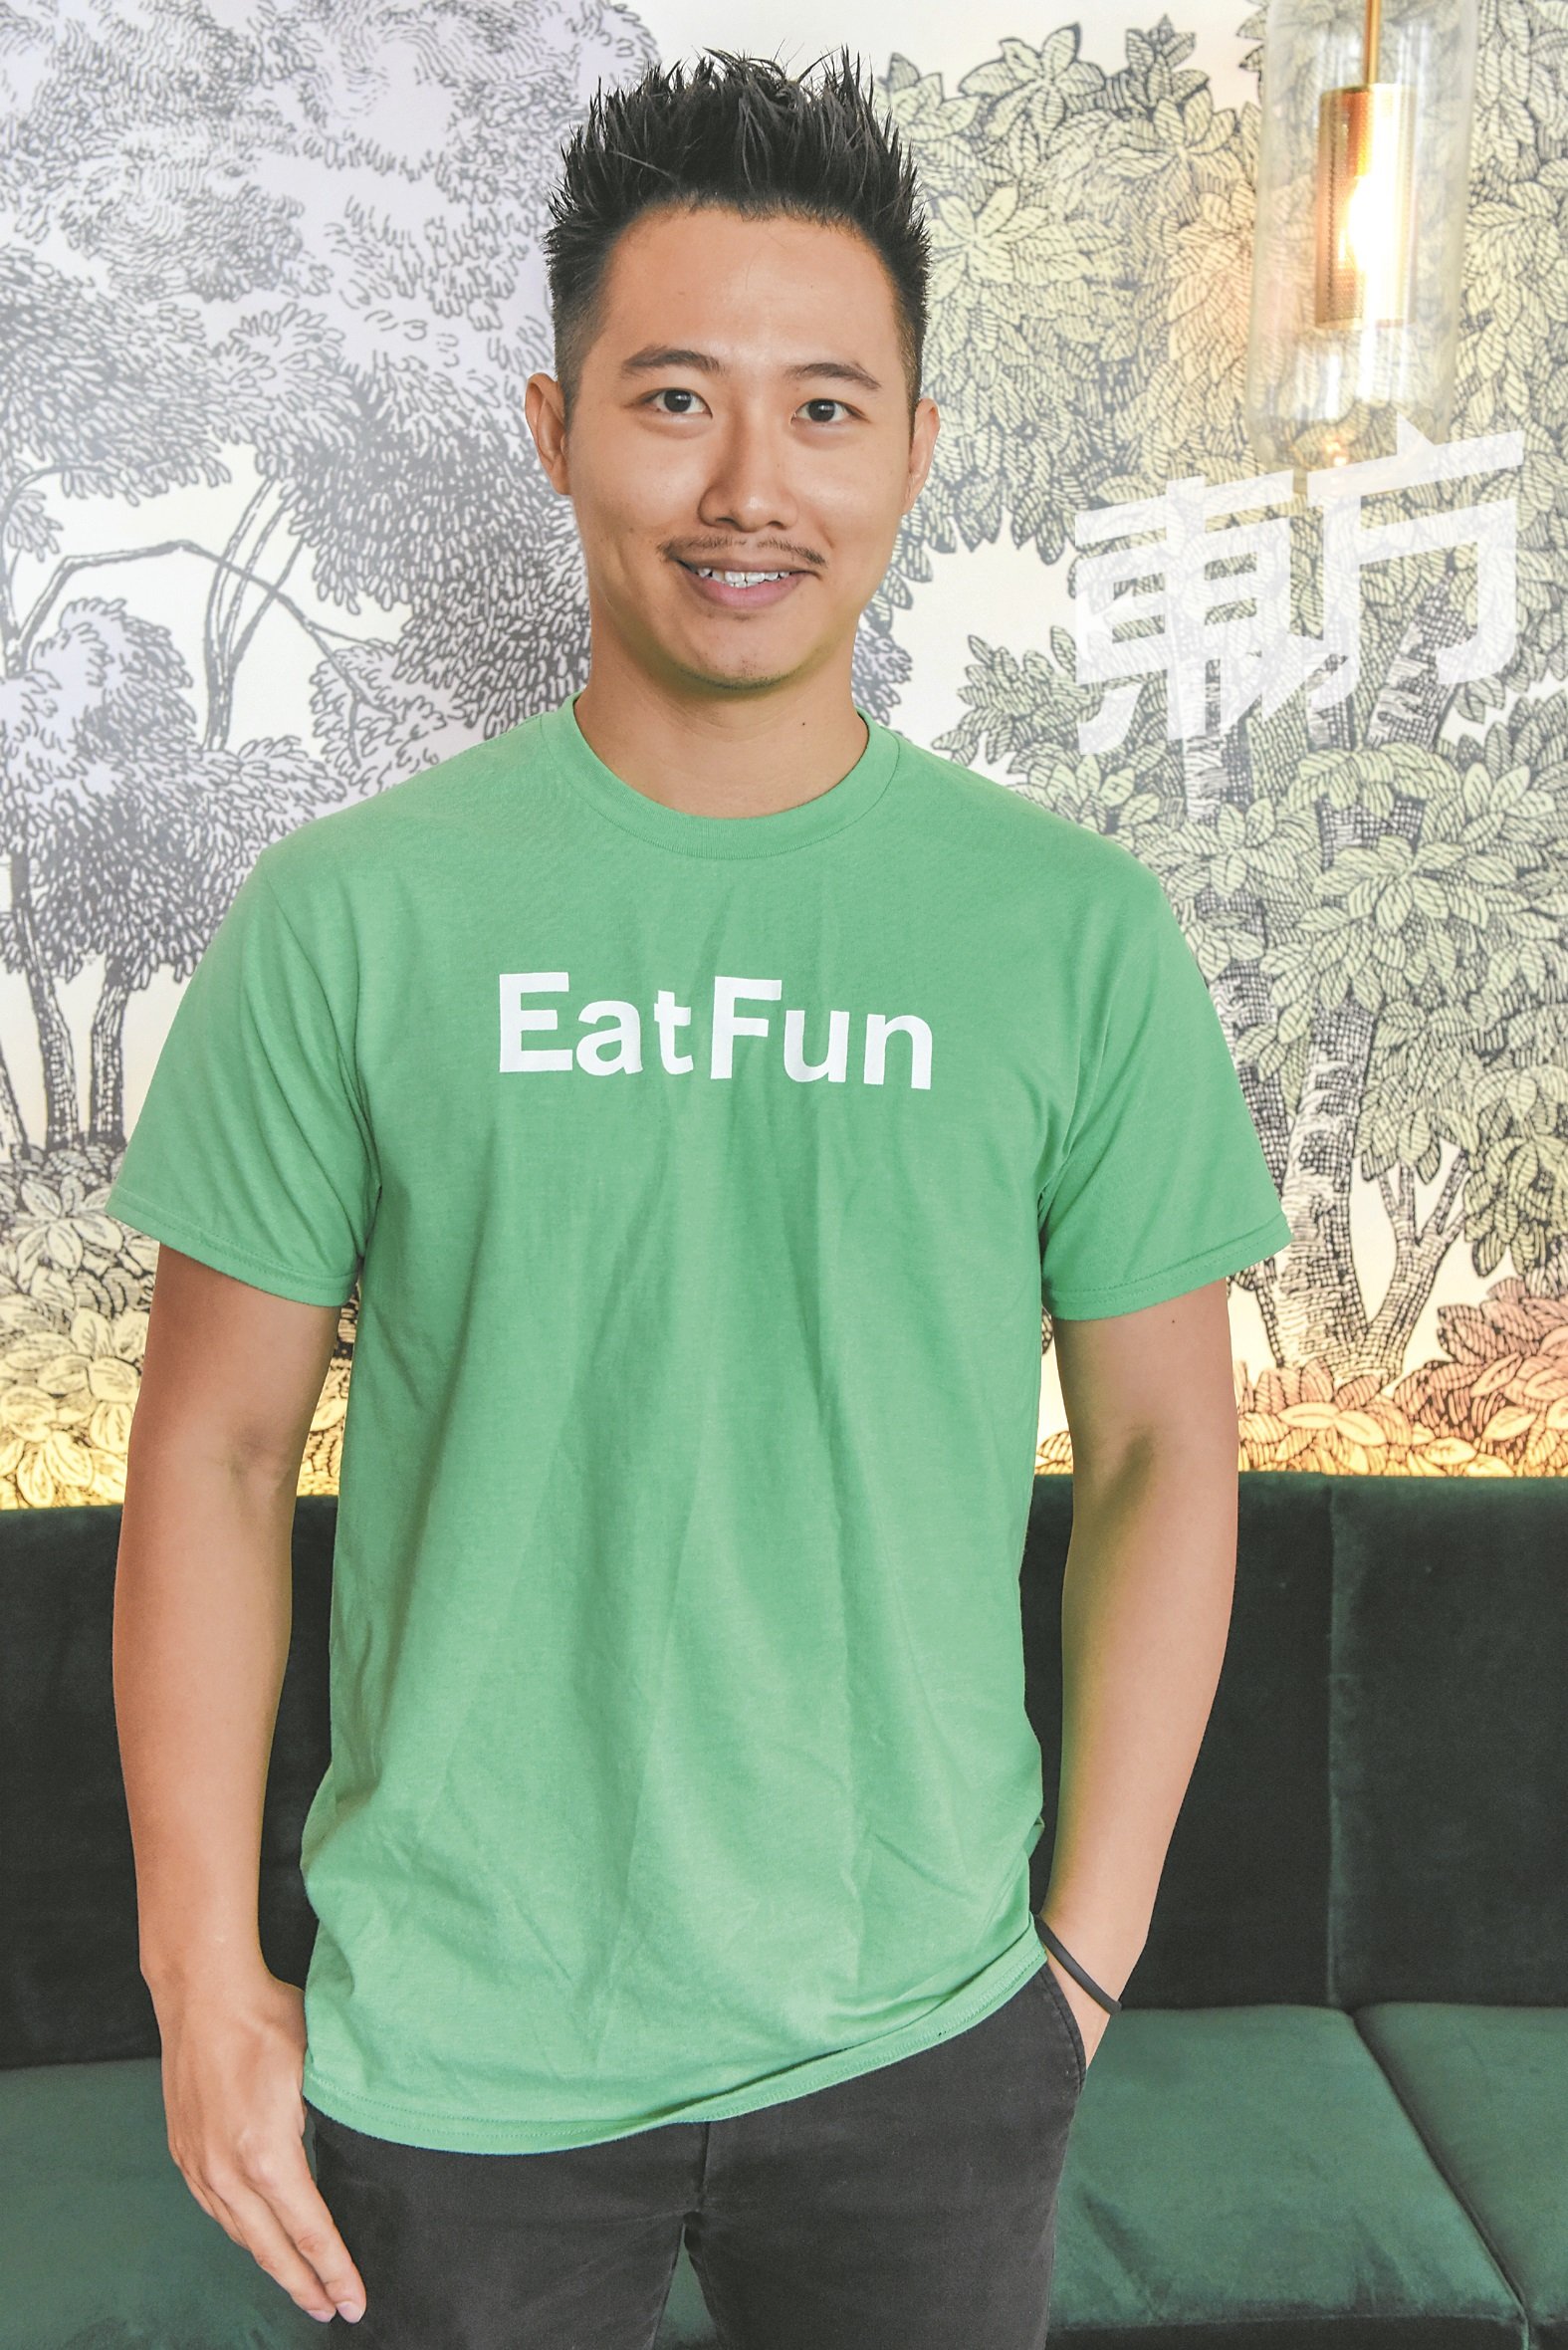 EatFun团队非常年轻，今年29岁的赖政贤已经是团队中最年长的一位。他毕业于工程系，后来转战房地产行业，直到一年前创立EatFun。“这对我来说，是一个很大的挑战，但我相信自己可以做得很好。”